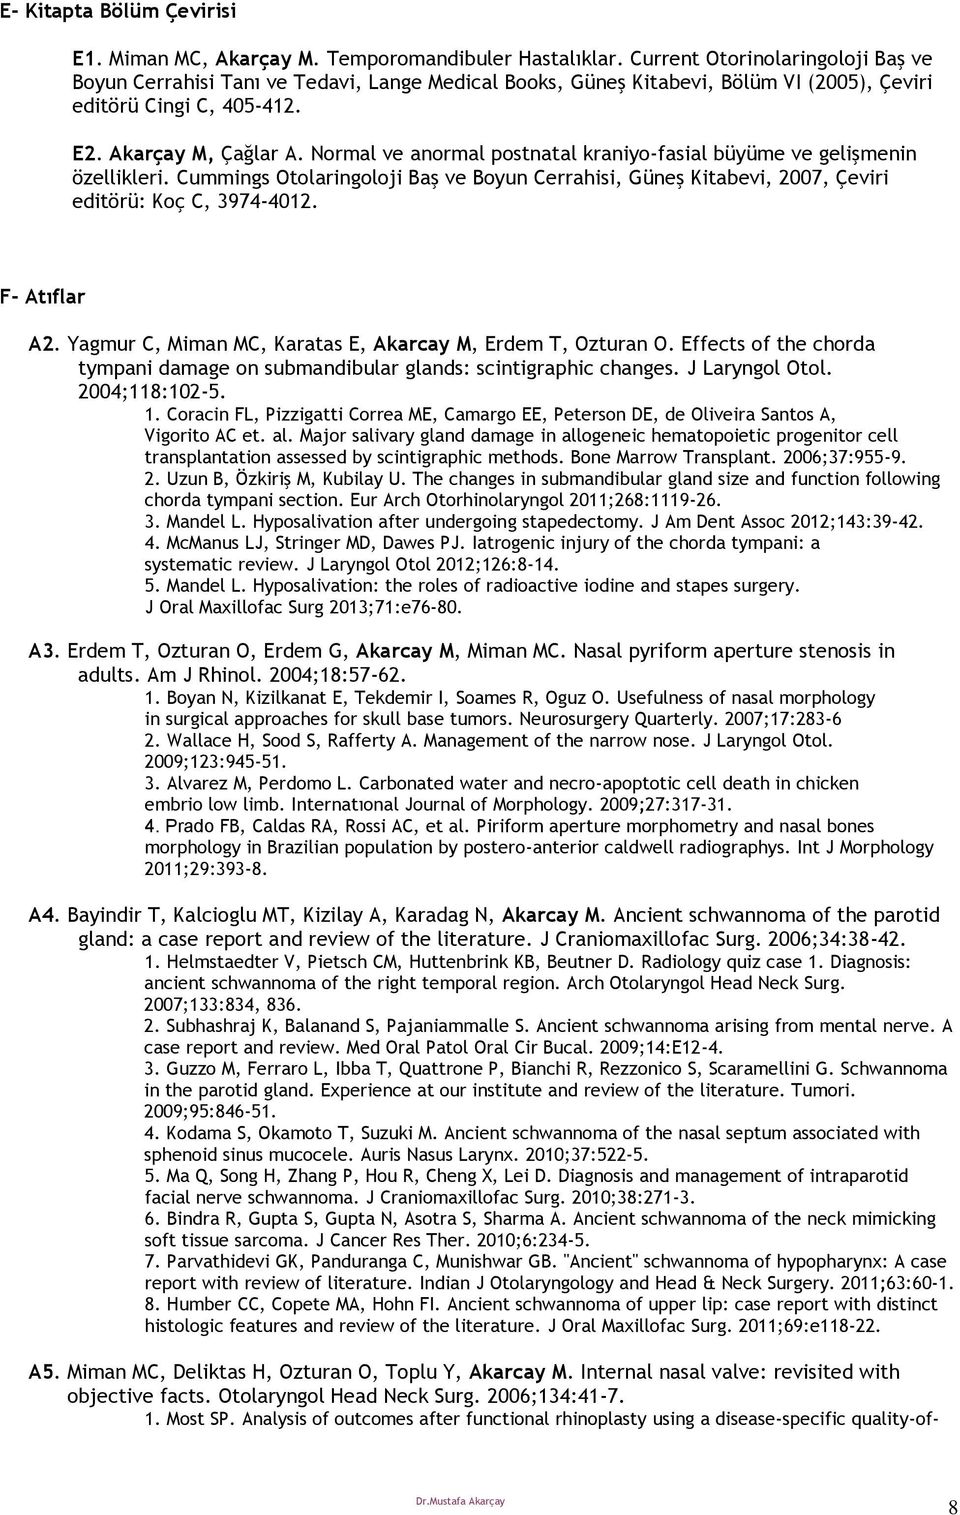 Normal ve anormal postnatal kraniyo-fasial büyüme ve gelişmenin özellikleri. Cummings Otolaringoloji Baş ve Boyun Cerrahisi, Güneş Kitabevi, 2007, Çeviri editörü: Koç C, 3974-4012. F- Atıflar A2.